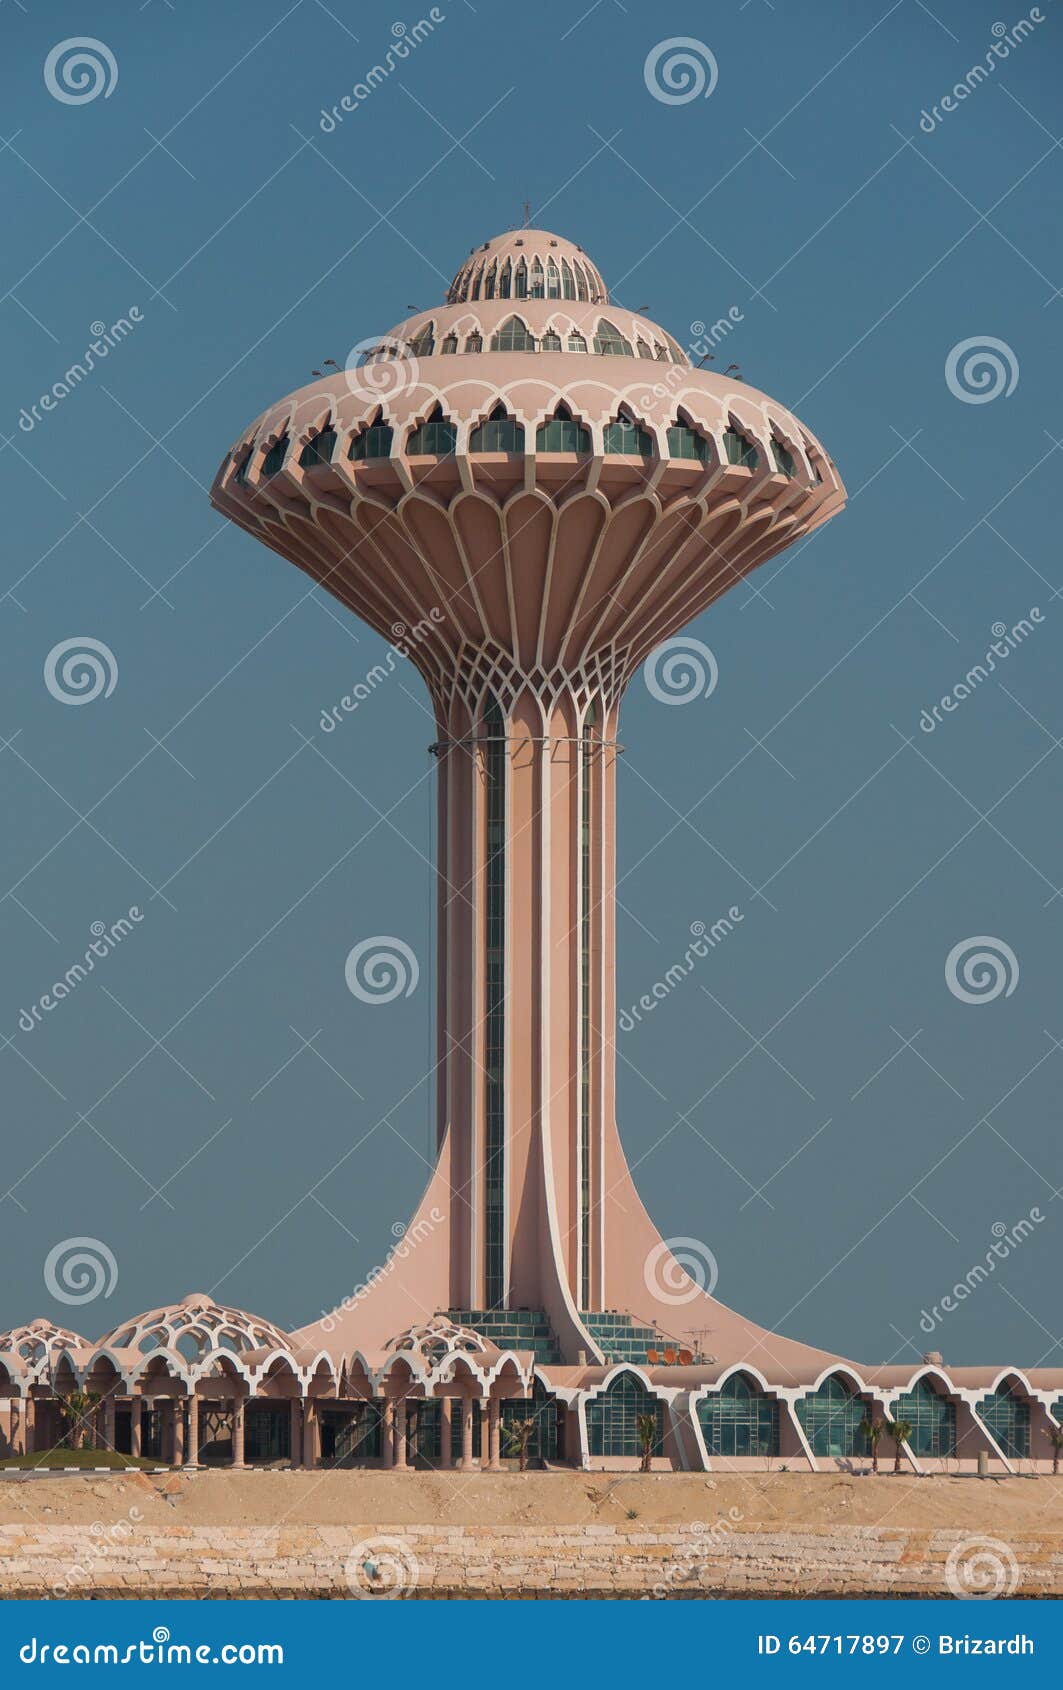 al khobar tower, al khobar, saudi arabia